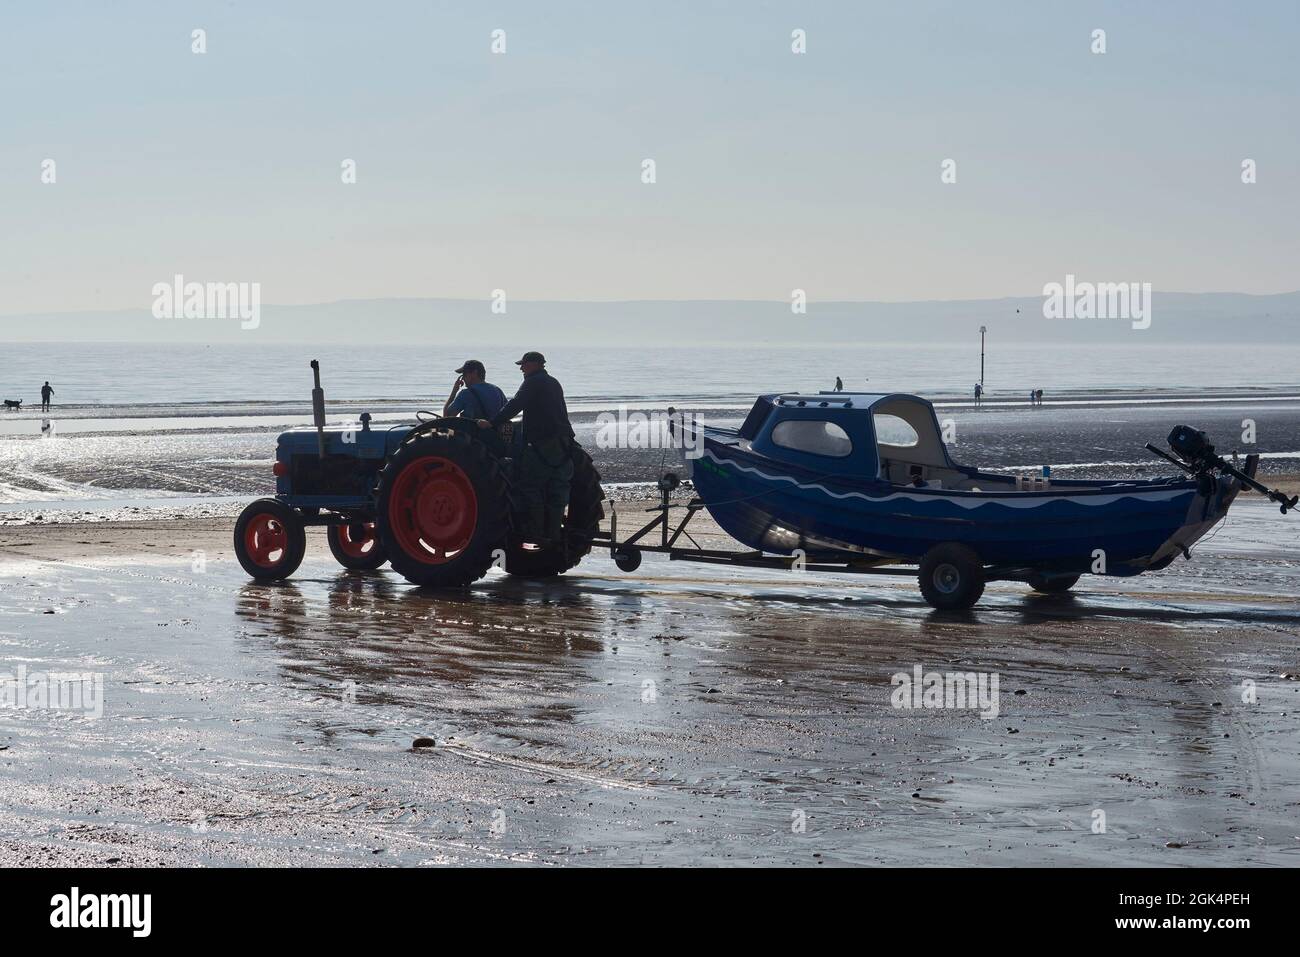 Alter Traktor zum Abschuss von Fischerbooten Fischerboote am Filey Beach, North Yorkshire Ostküste, beschäftigt mit Urlaubern, Nordengland, Großbritannien Stockfoto